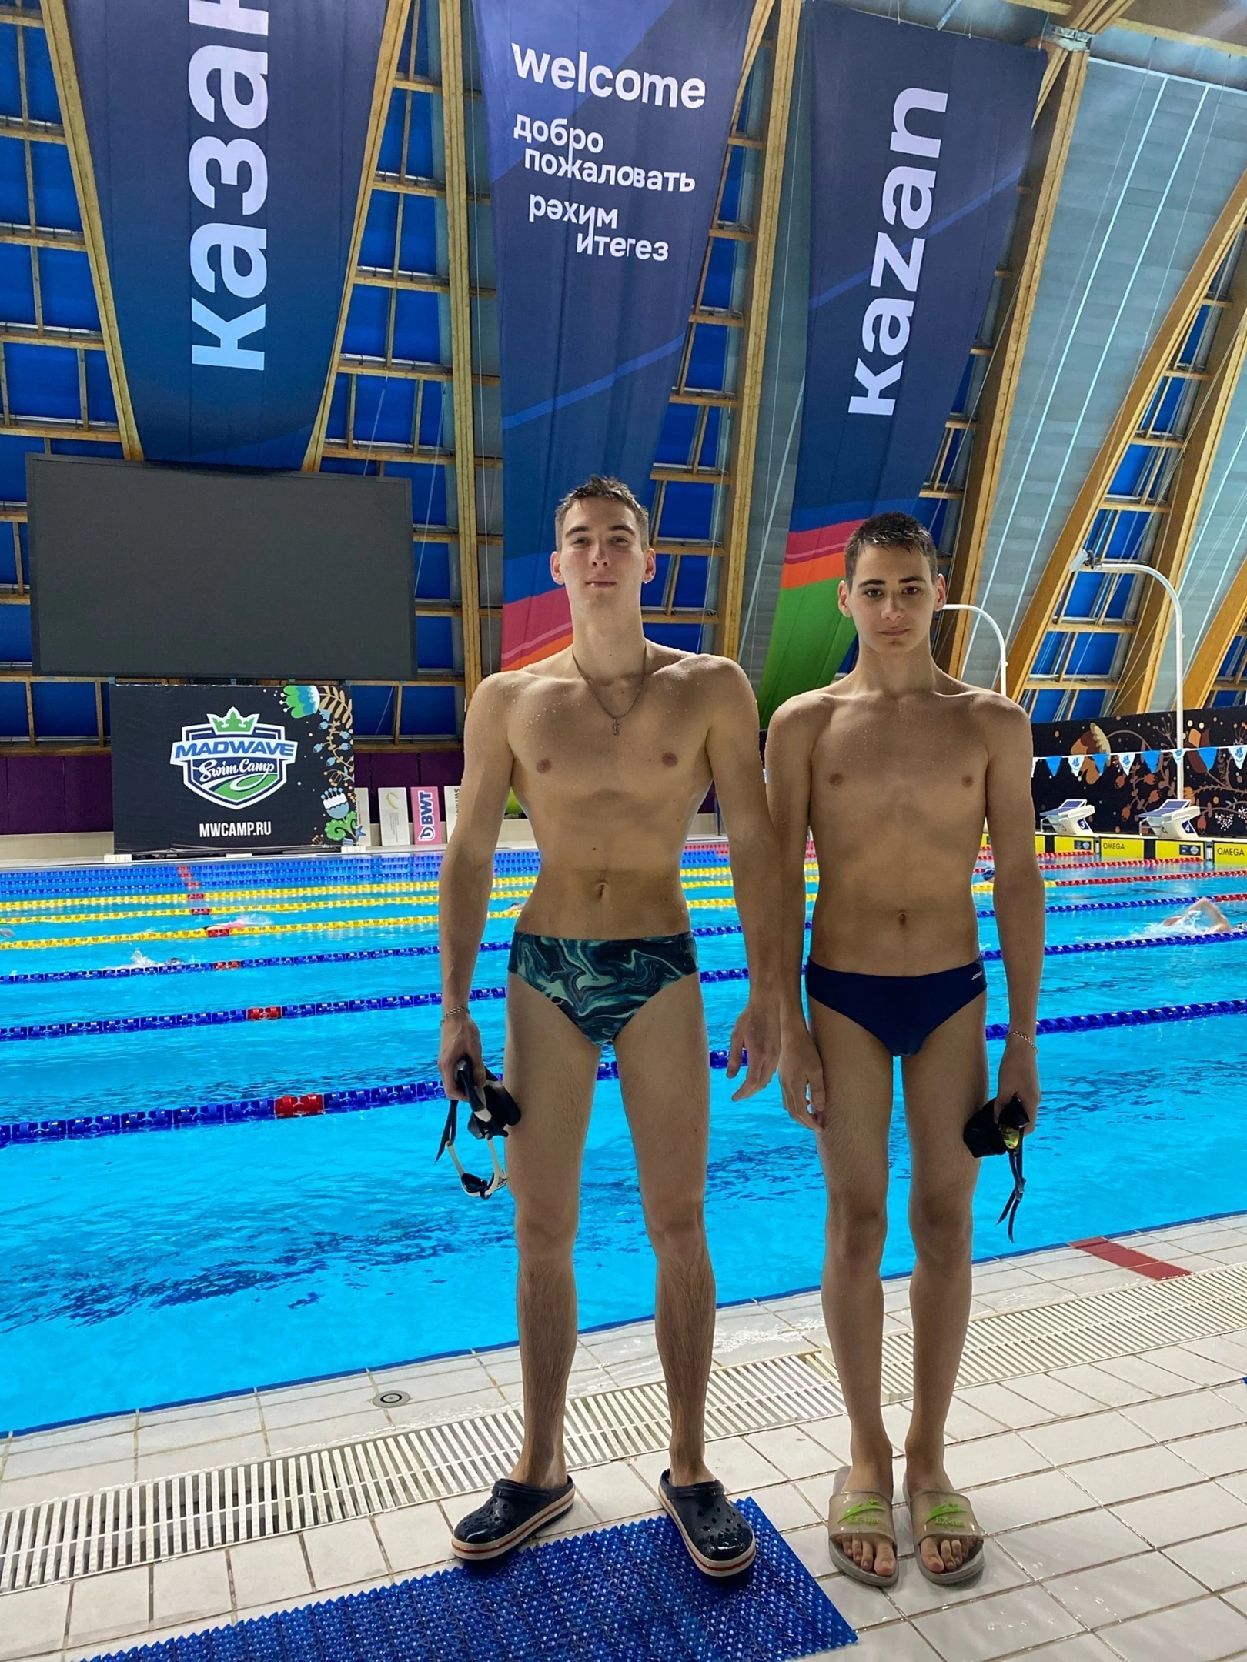 Третье место во Всероссийских соревнованиях по плаванию занял уруссинский пловец